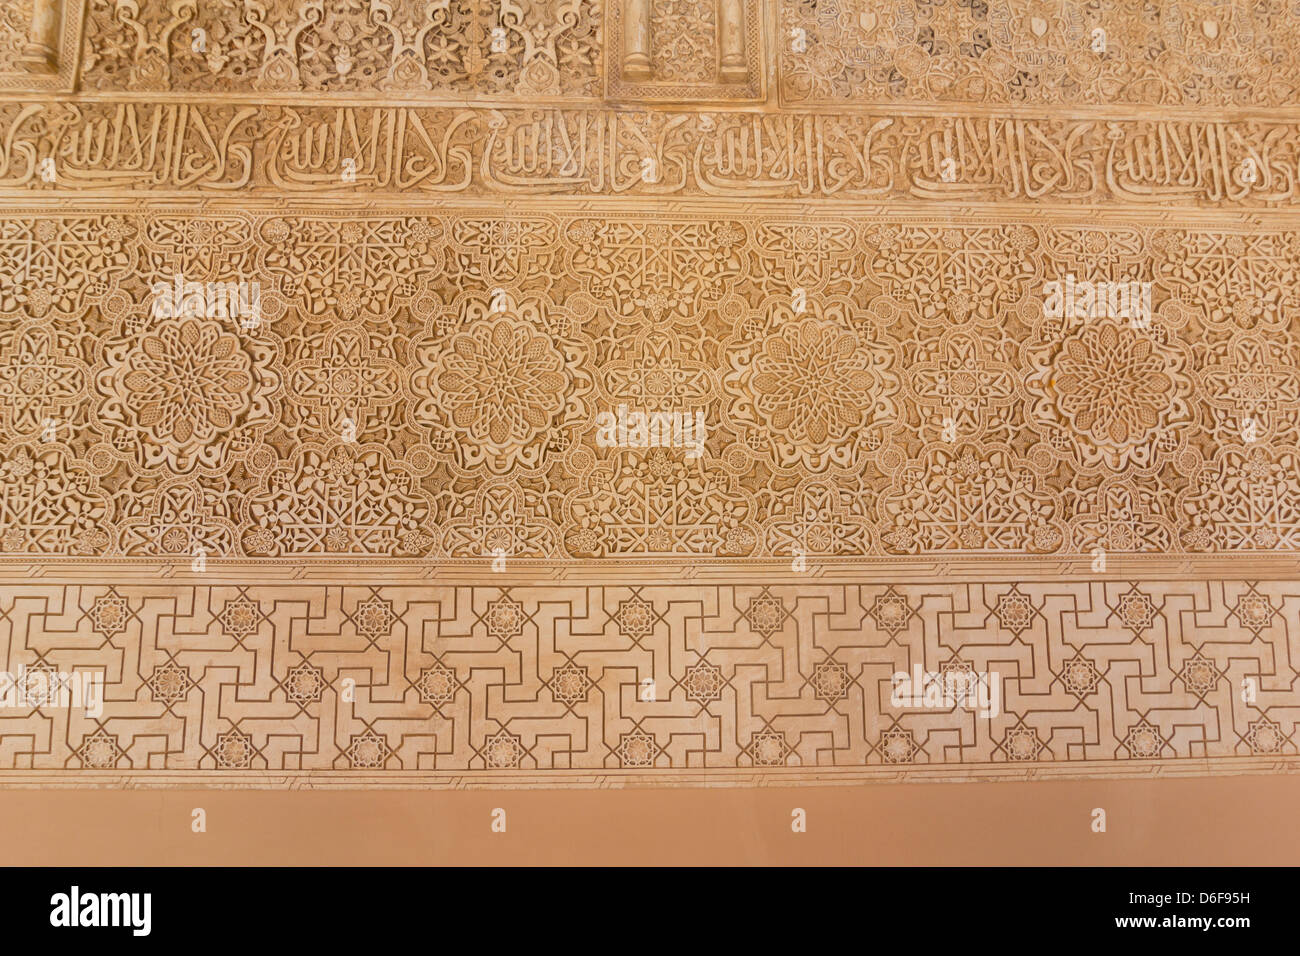 Plâtre stuc Salle des Rois, Sala de los Reyes, à l'Alhambra, Patio de los Leones, cour Banque D'Images